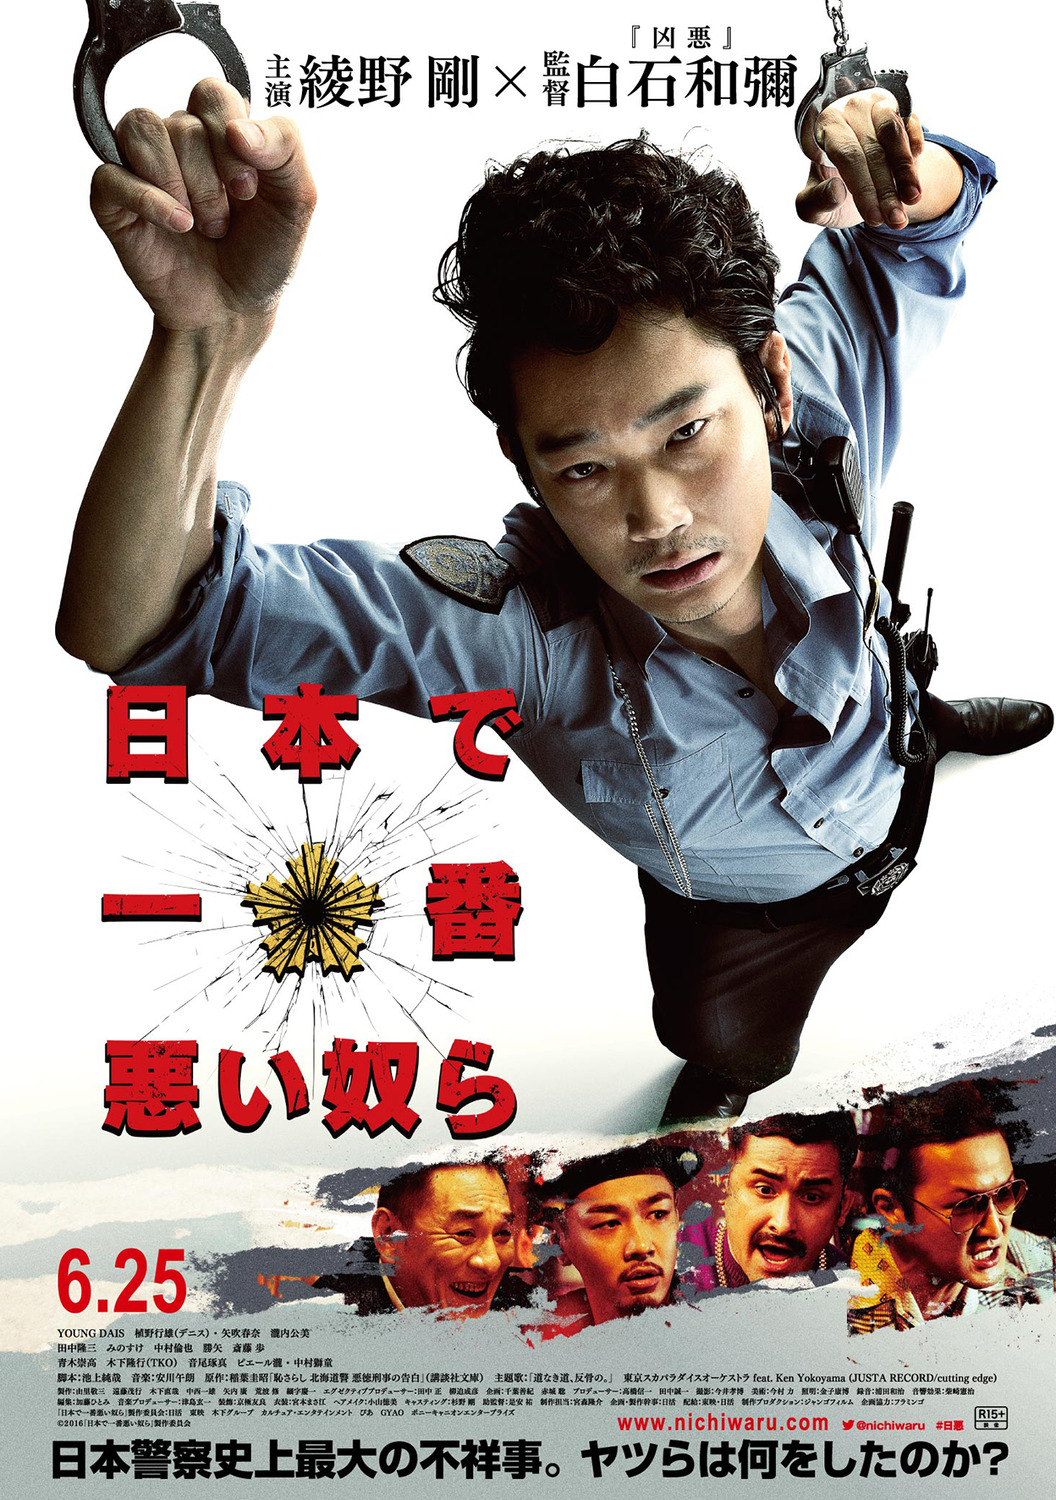 Extra Large Movie Poster Image for Nihon de ichiban warui yatsura (#3 of 3)